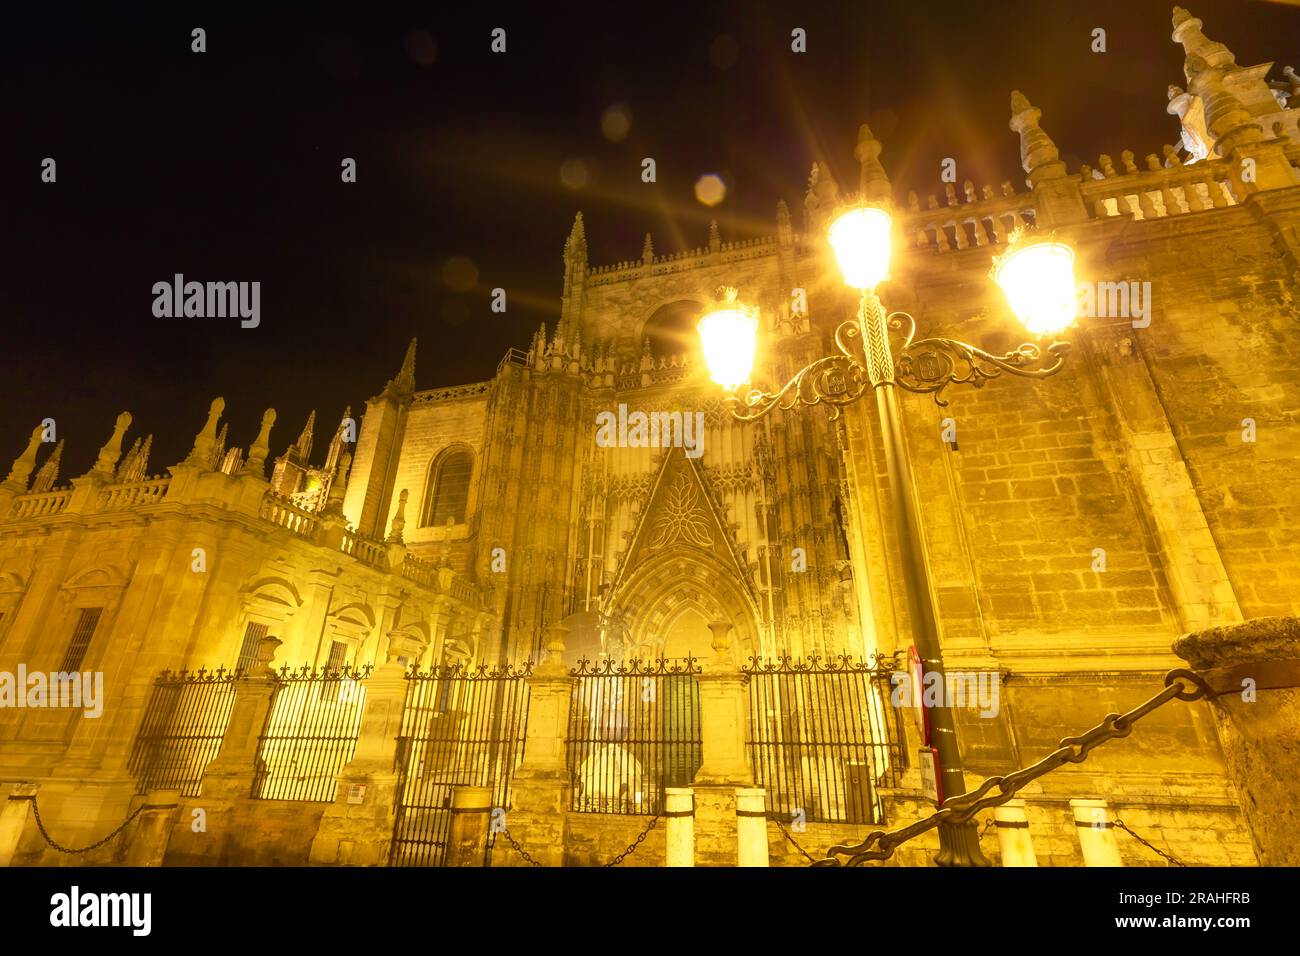 Cattedrale di Siviglia di notte. Attrazioni turistiche di Siviglia, Andalusia, Spagna. Cattedrale di Santa Maria della sede, cattolica romana e la più grande Foto Stock